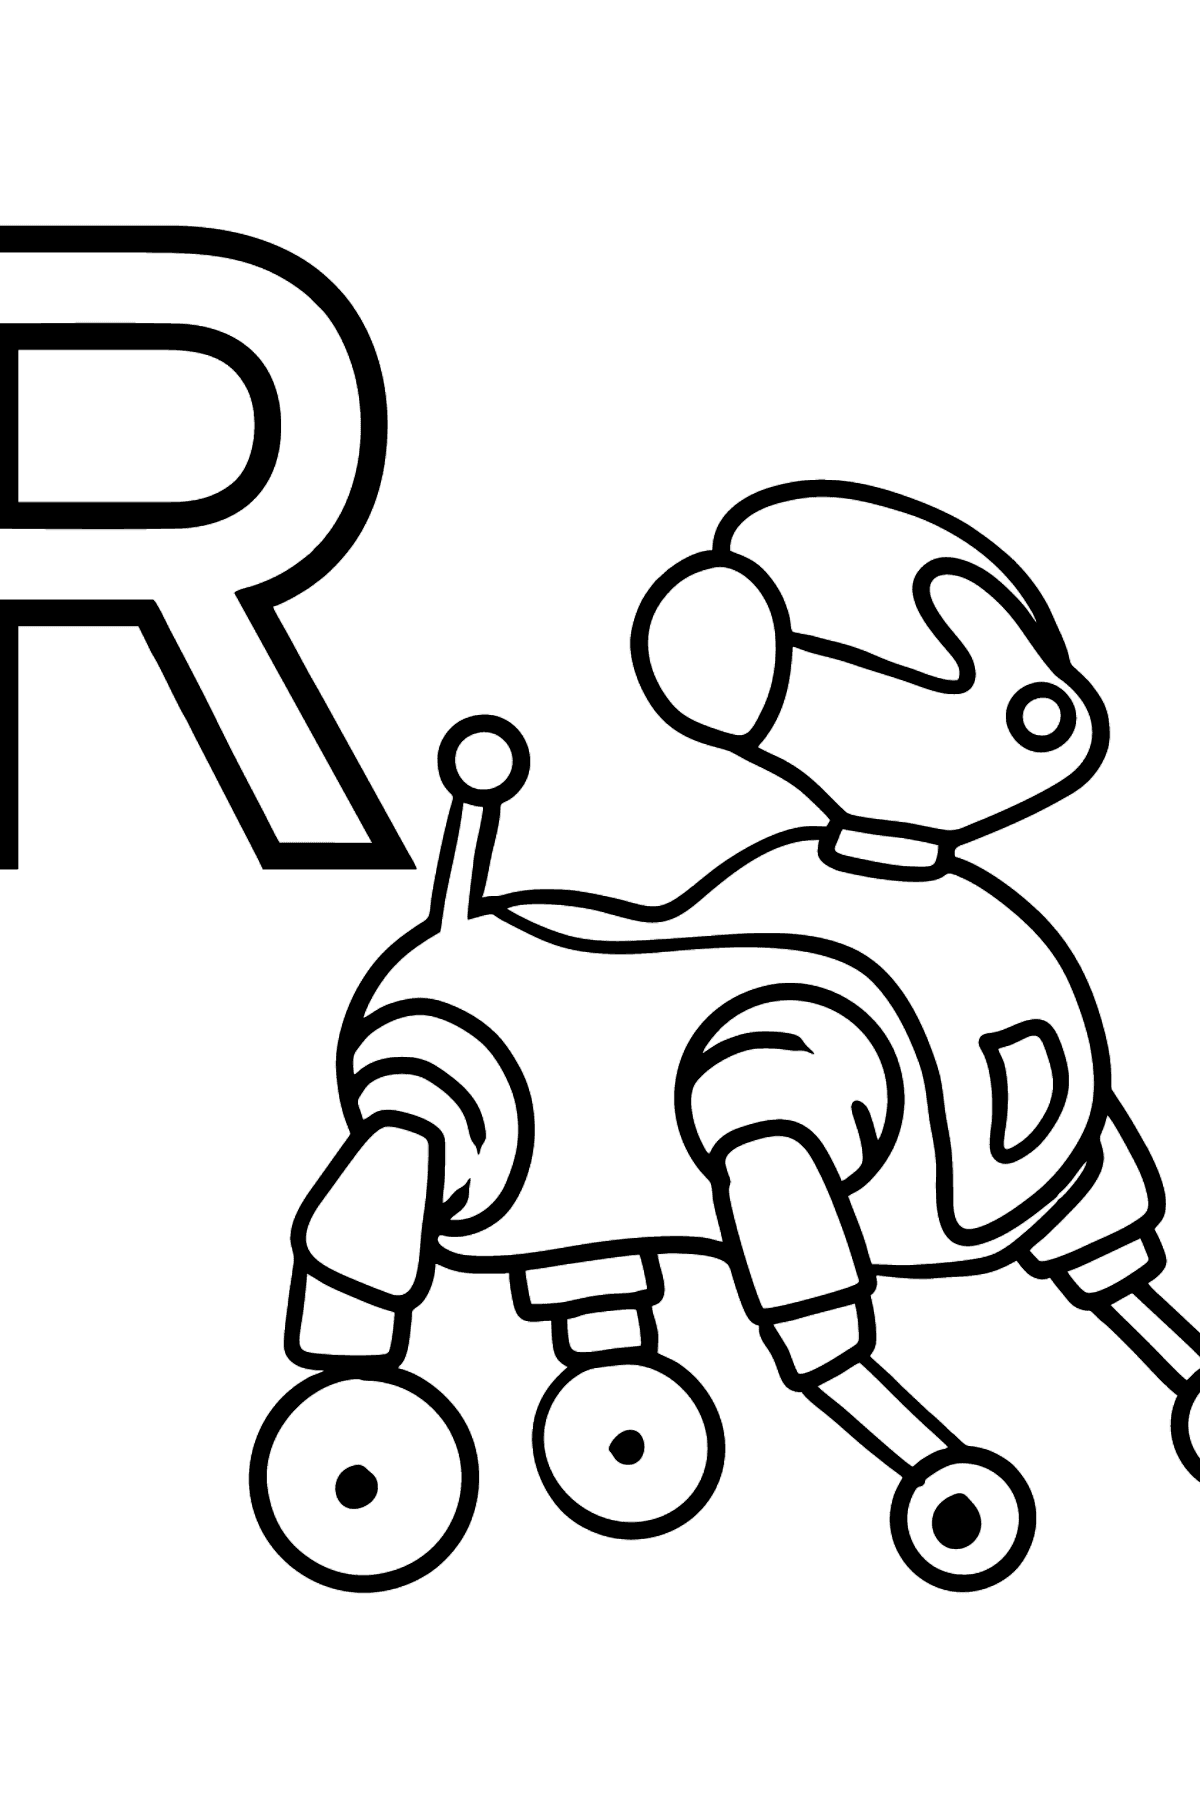 Coloriage - Lettre anglaise R - ROBOT - Coloriages pour les Enfants